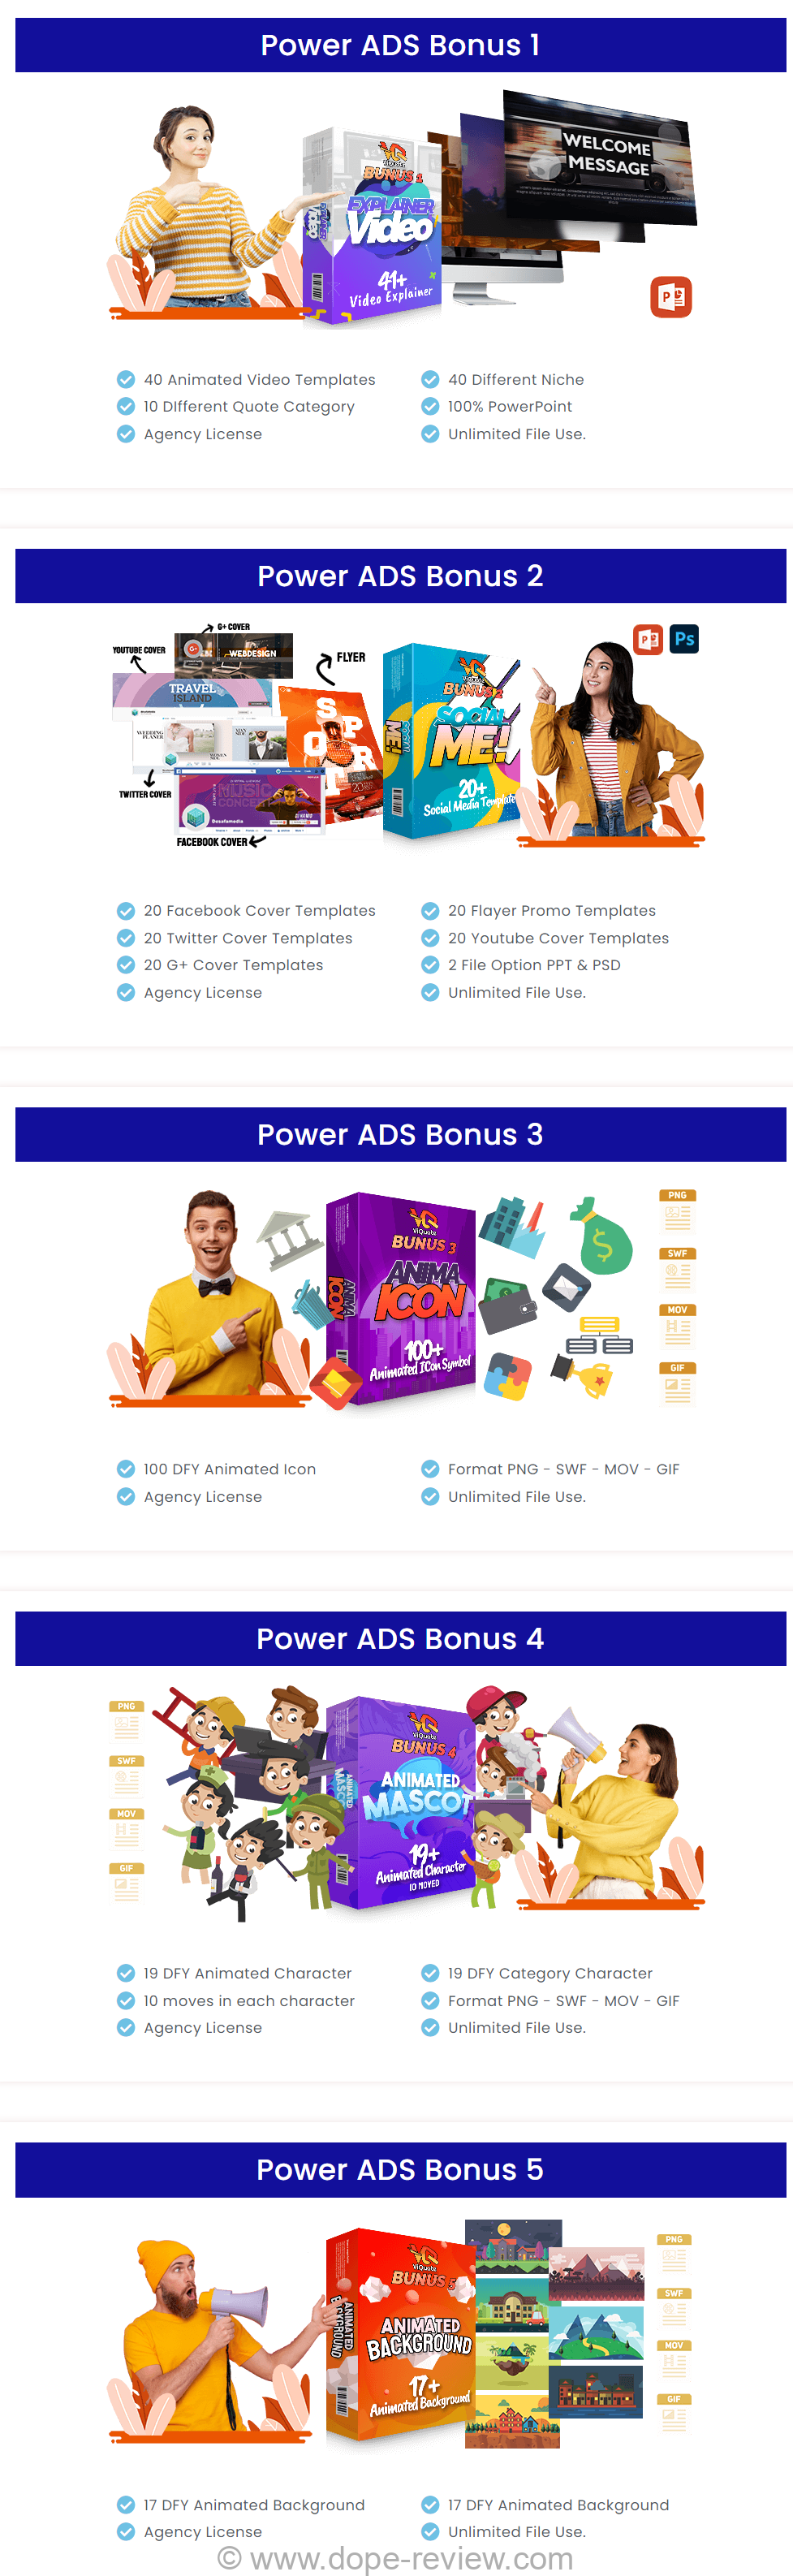 Power ADS Bonus